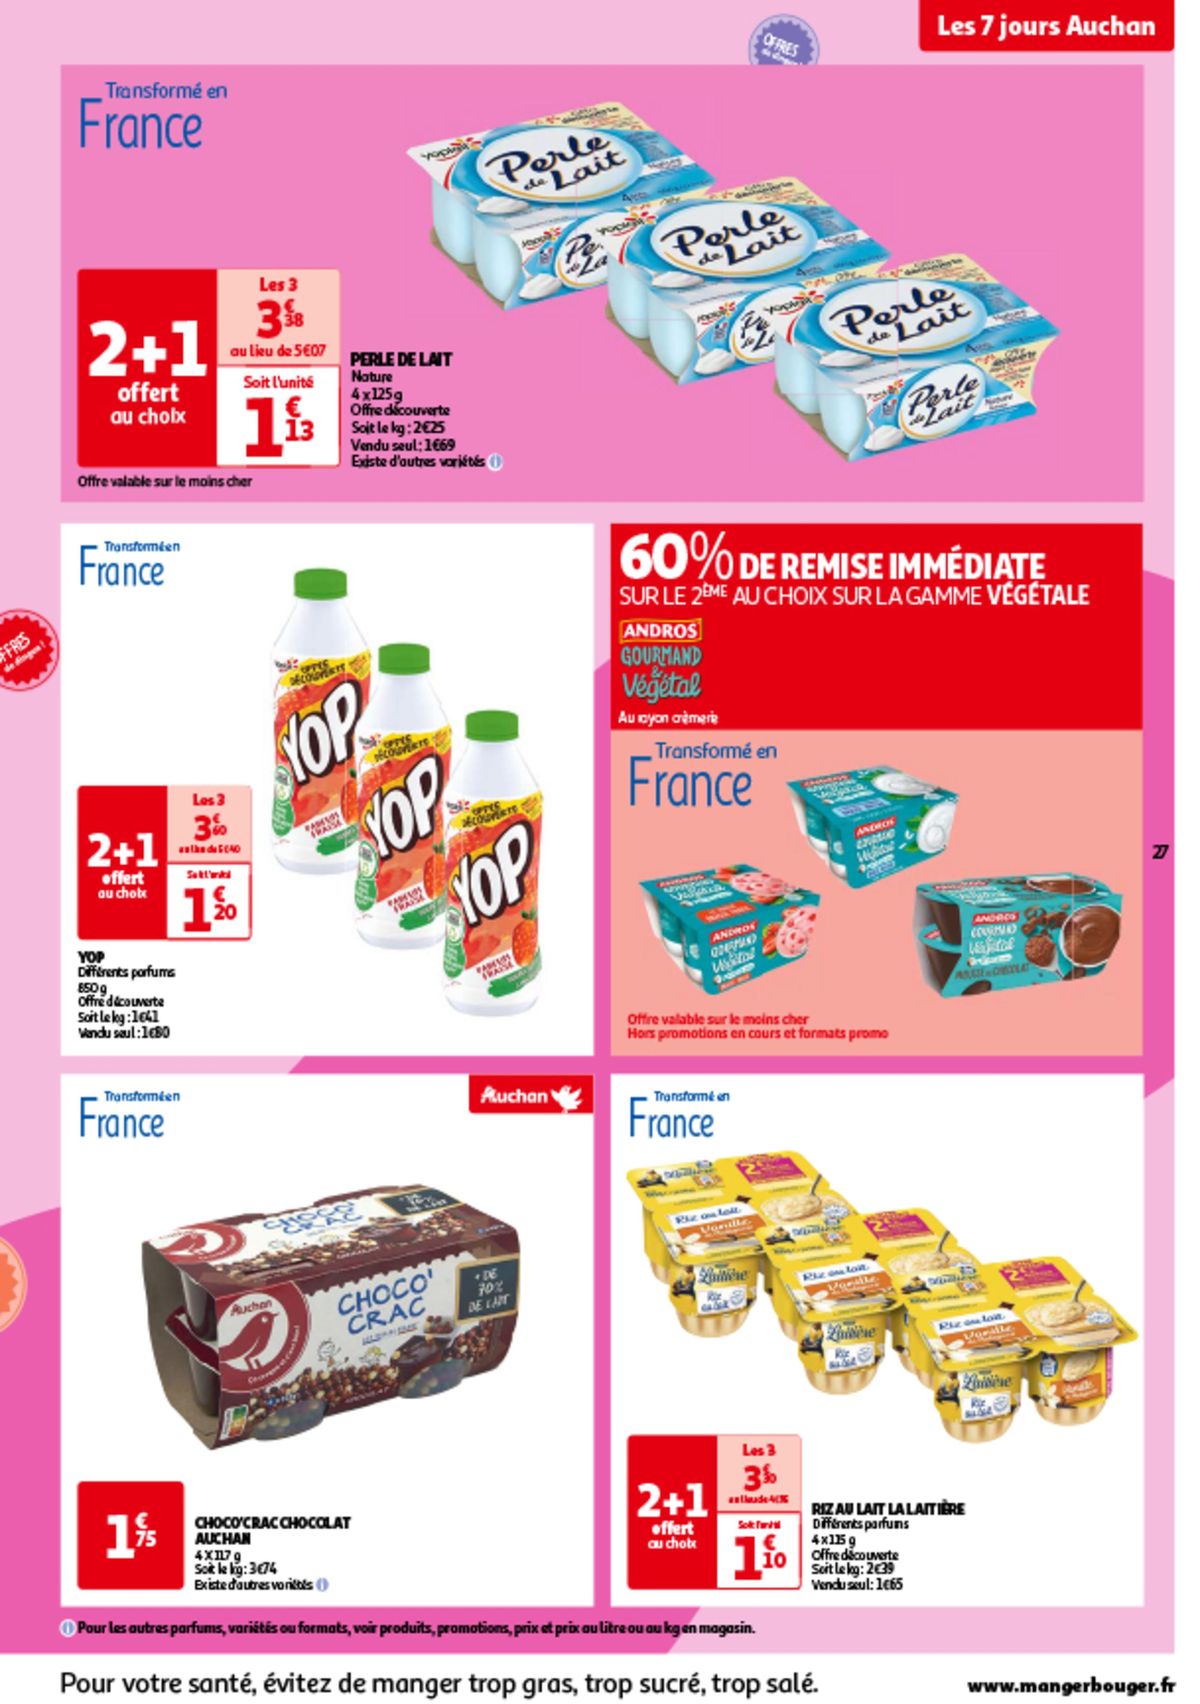 Catalogue Les 7 jours Auchan, c'est maintenant !, page 00027